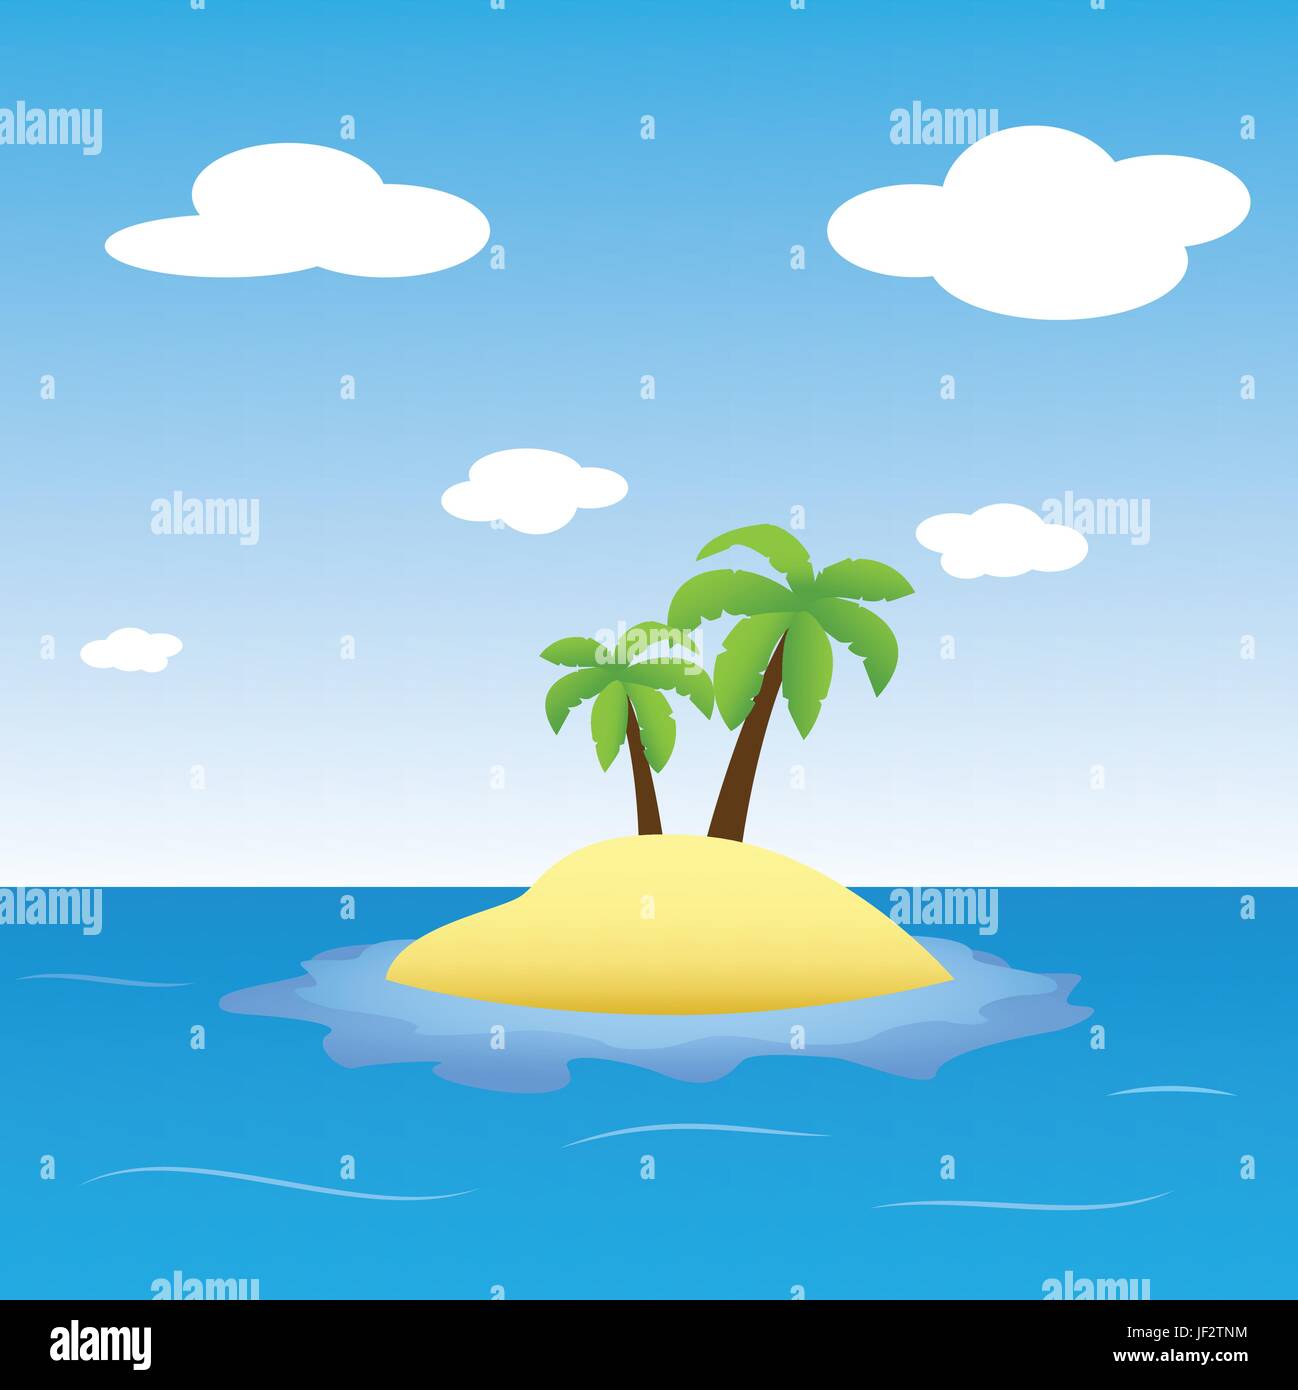 beach, seaside, the beach, seashore, summer, summerly, palms, illustration, Stock Vector